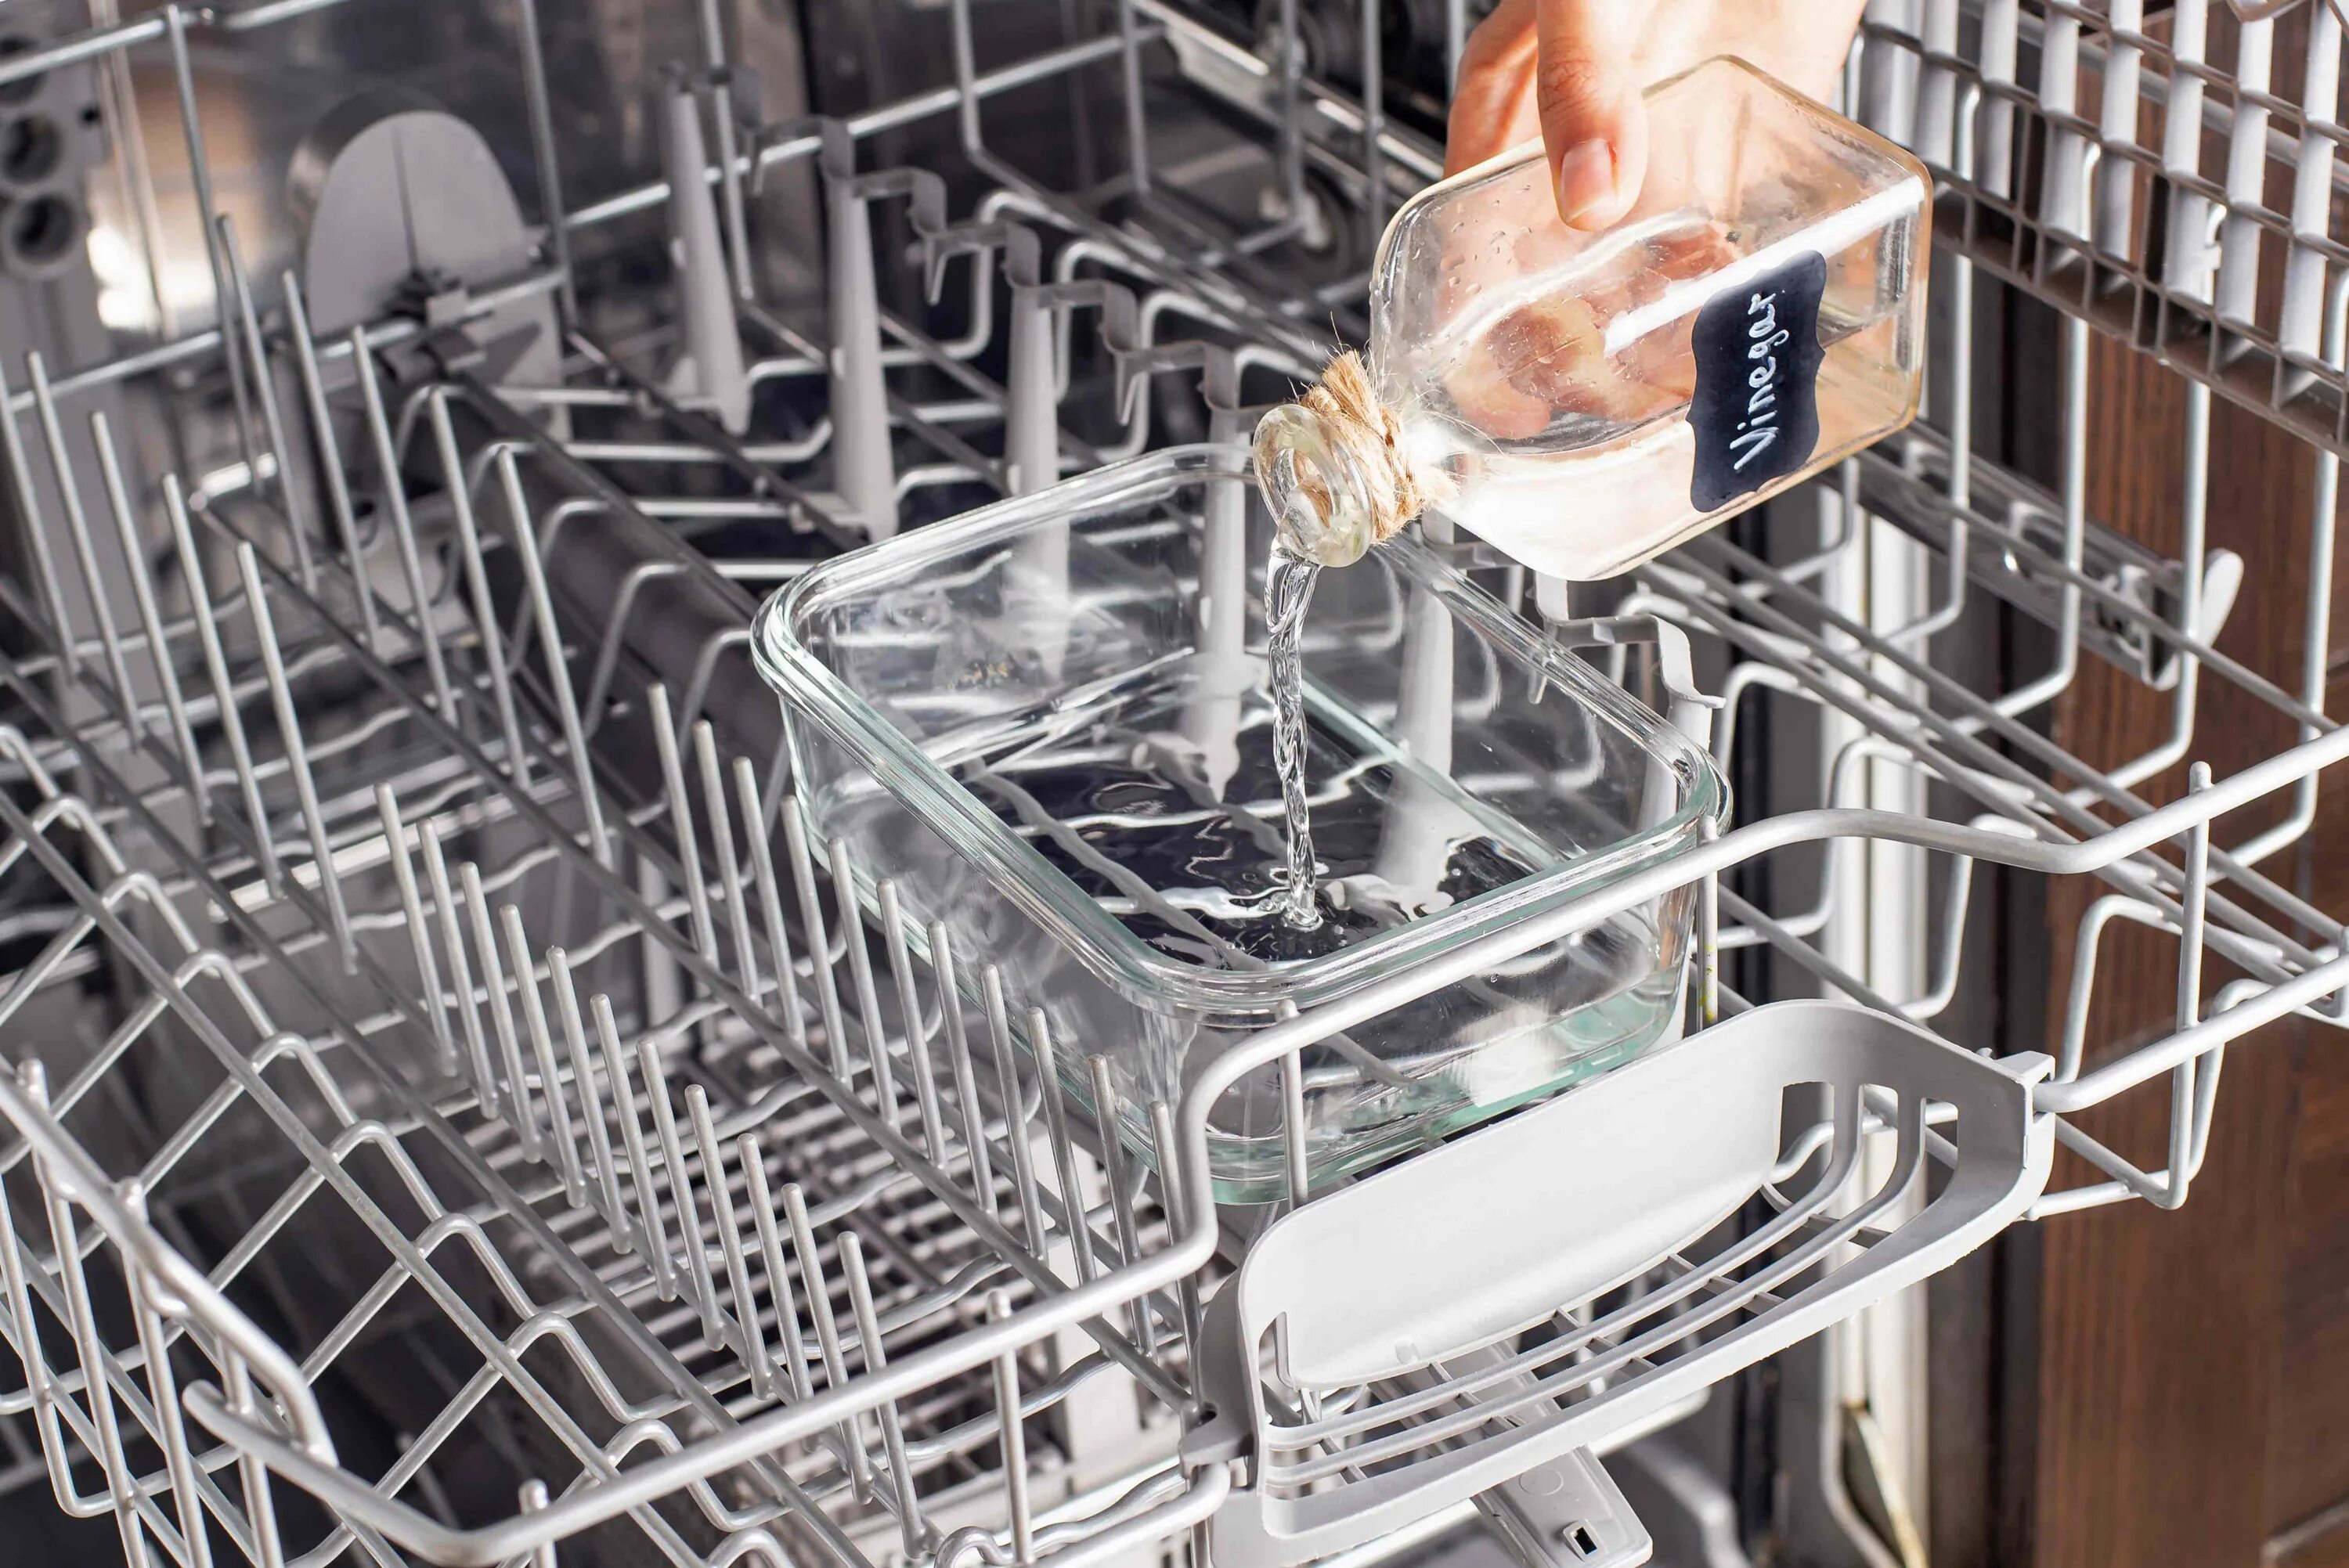 Кастрюли можно мыть в посудомойке. Фильтр для посудомоечной машины. Чистка посудомоечной машины. Помыть посудомоечную машину. Посуда в посудомойке.